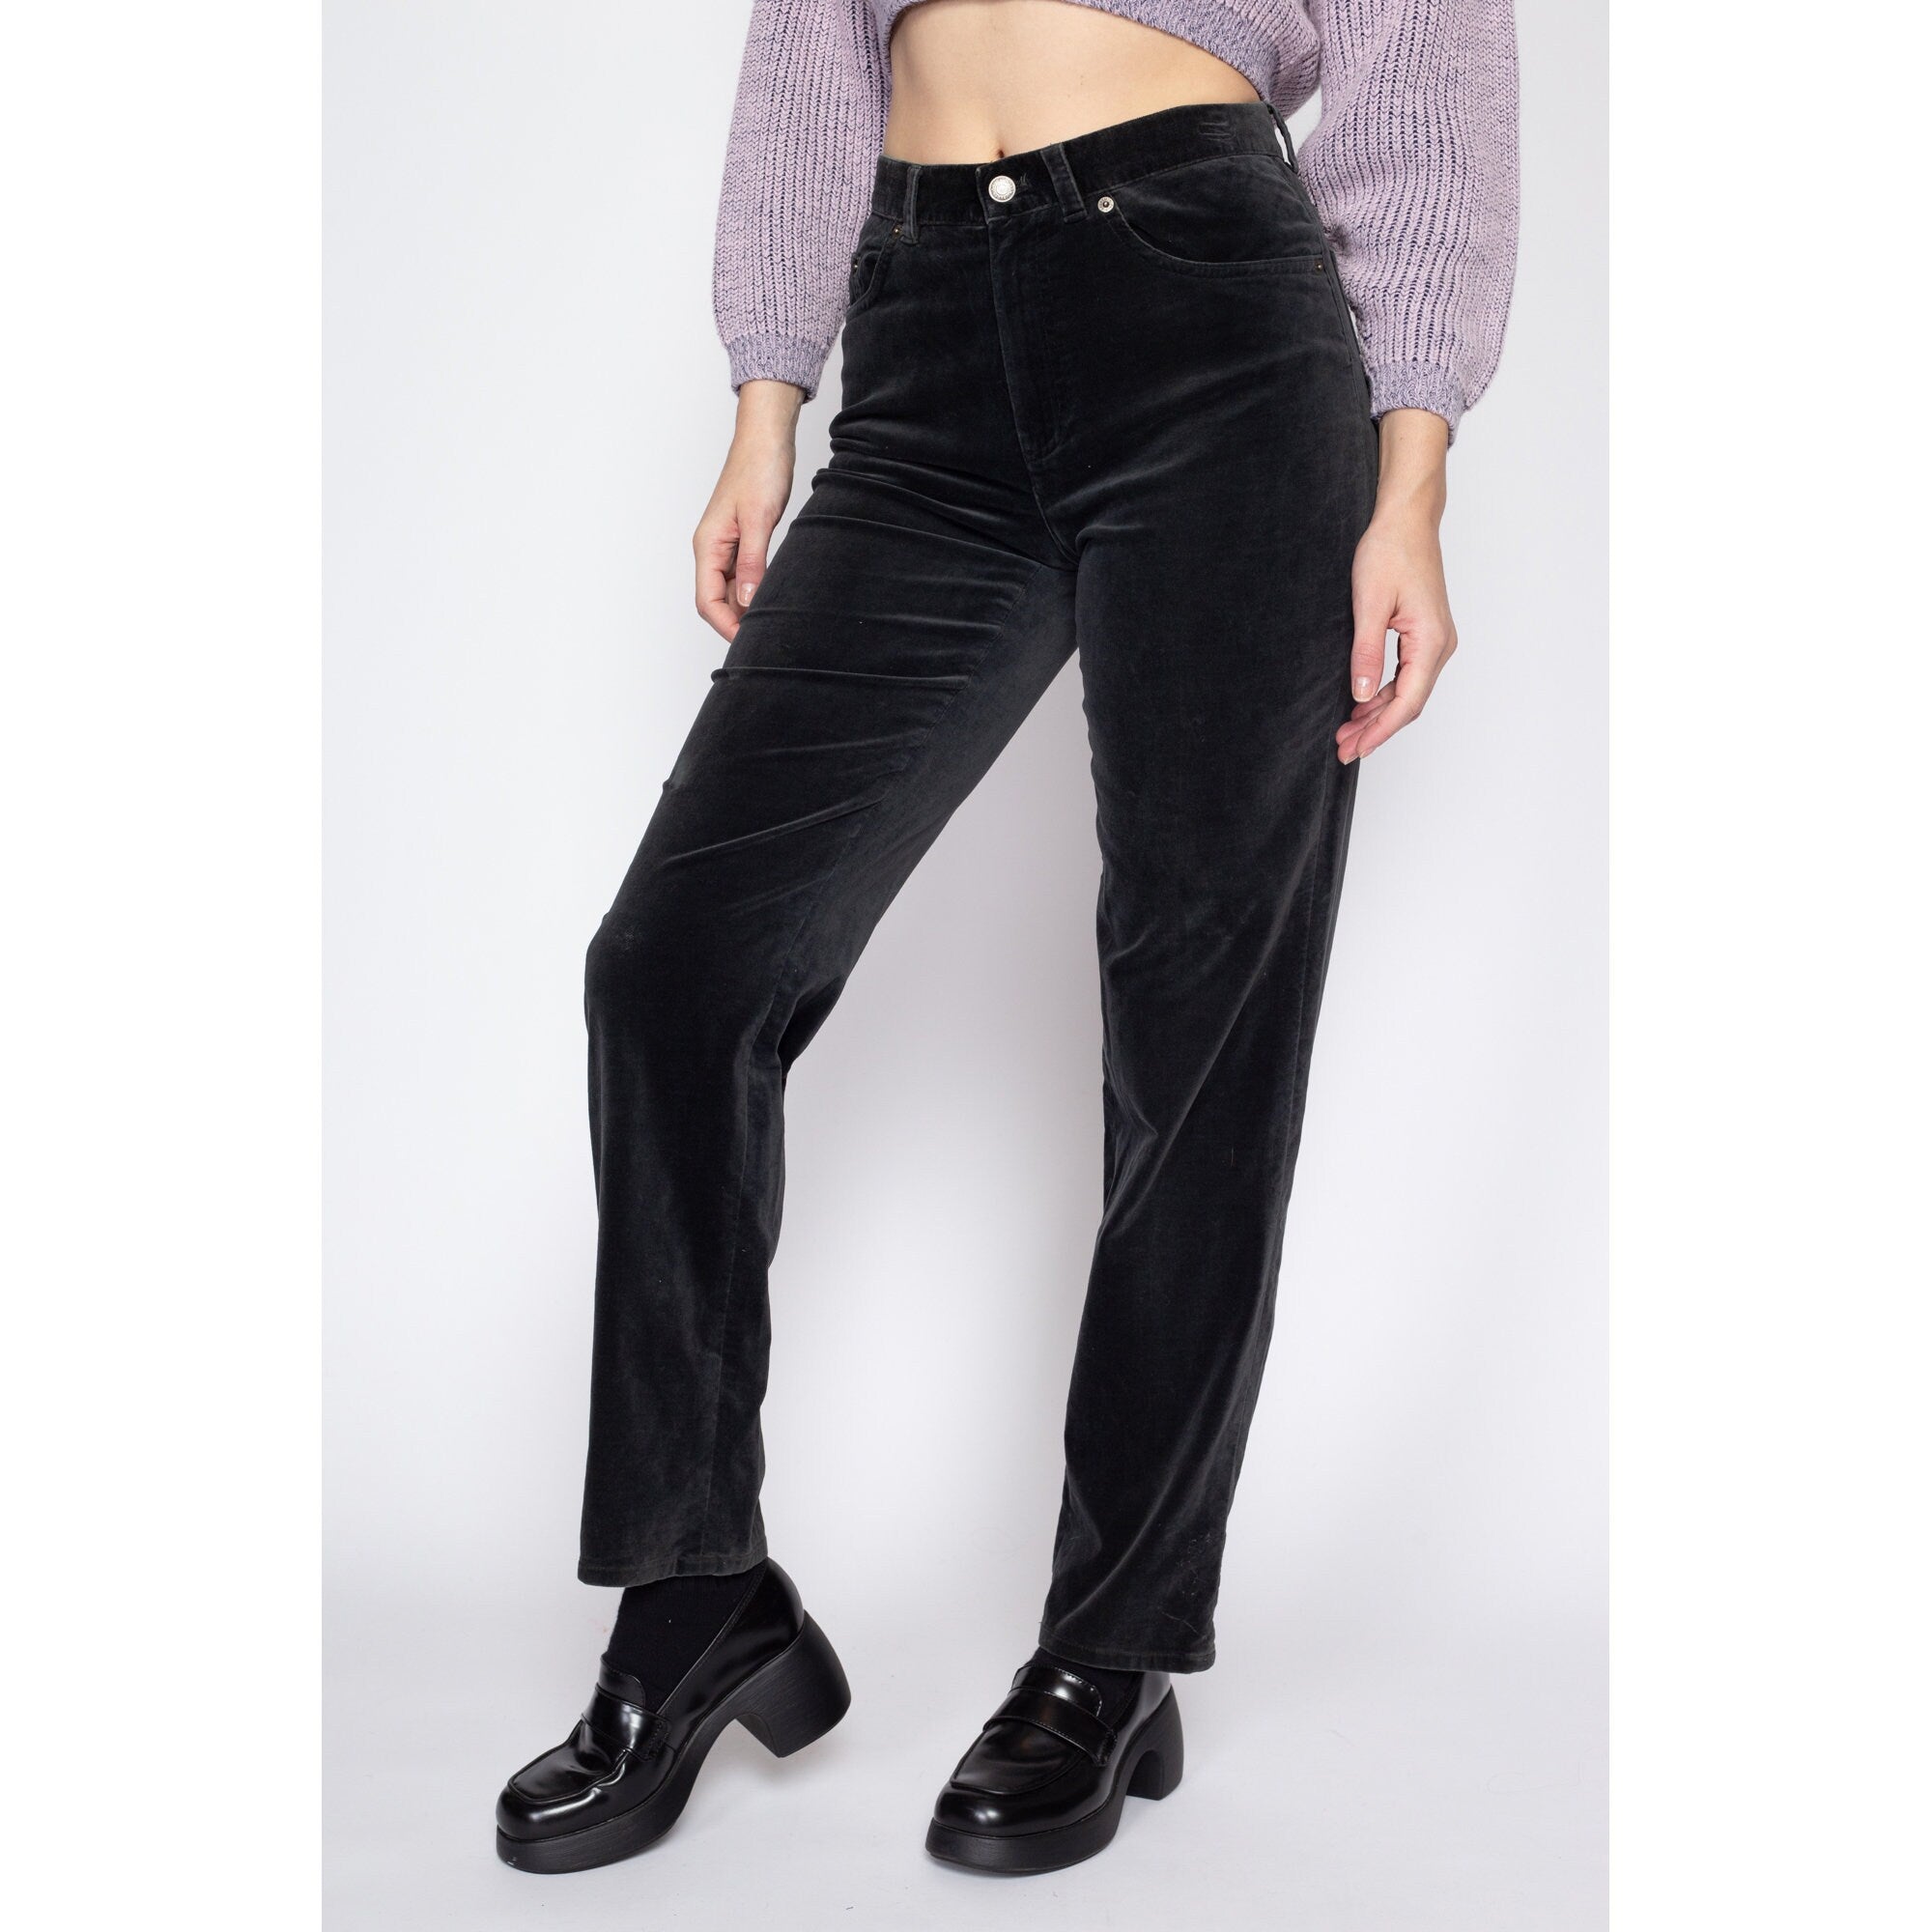 Buy Vintage 90s Velvet High Rise Pants M Black Tapered Leg Pockets Hook Eye  Zipper Online in India - Etsy